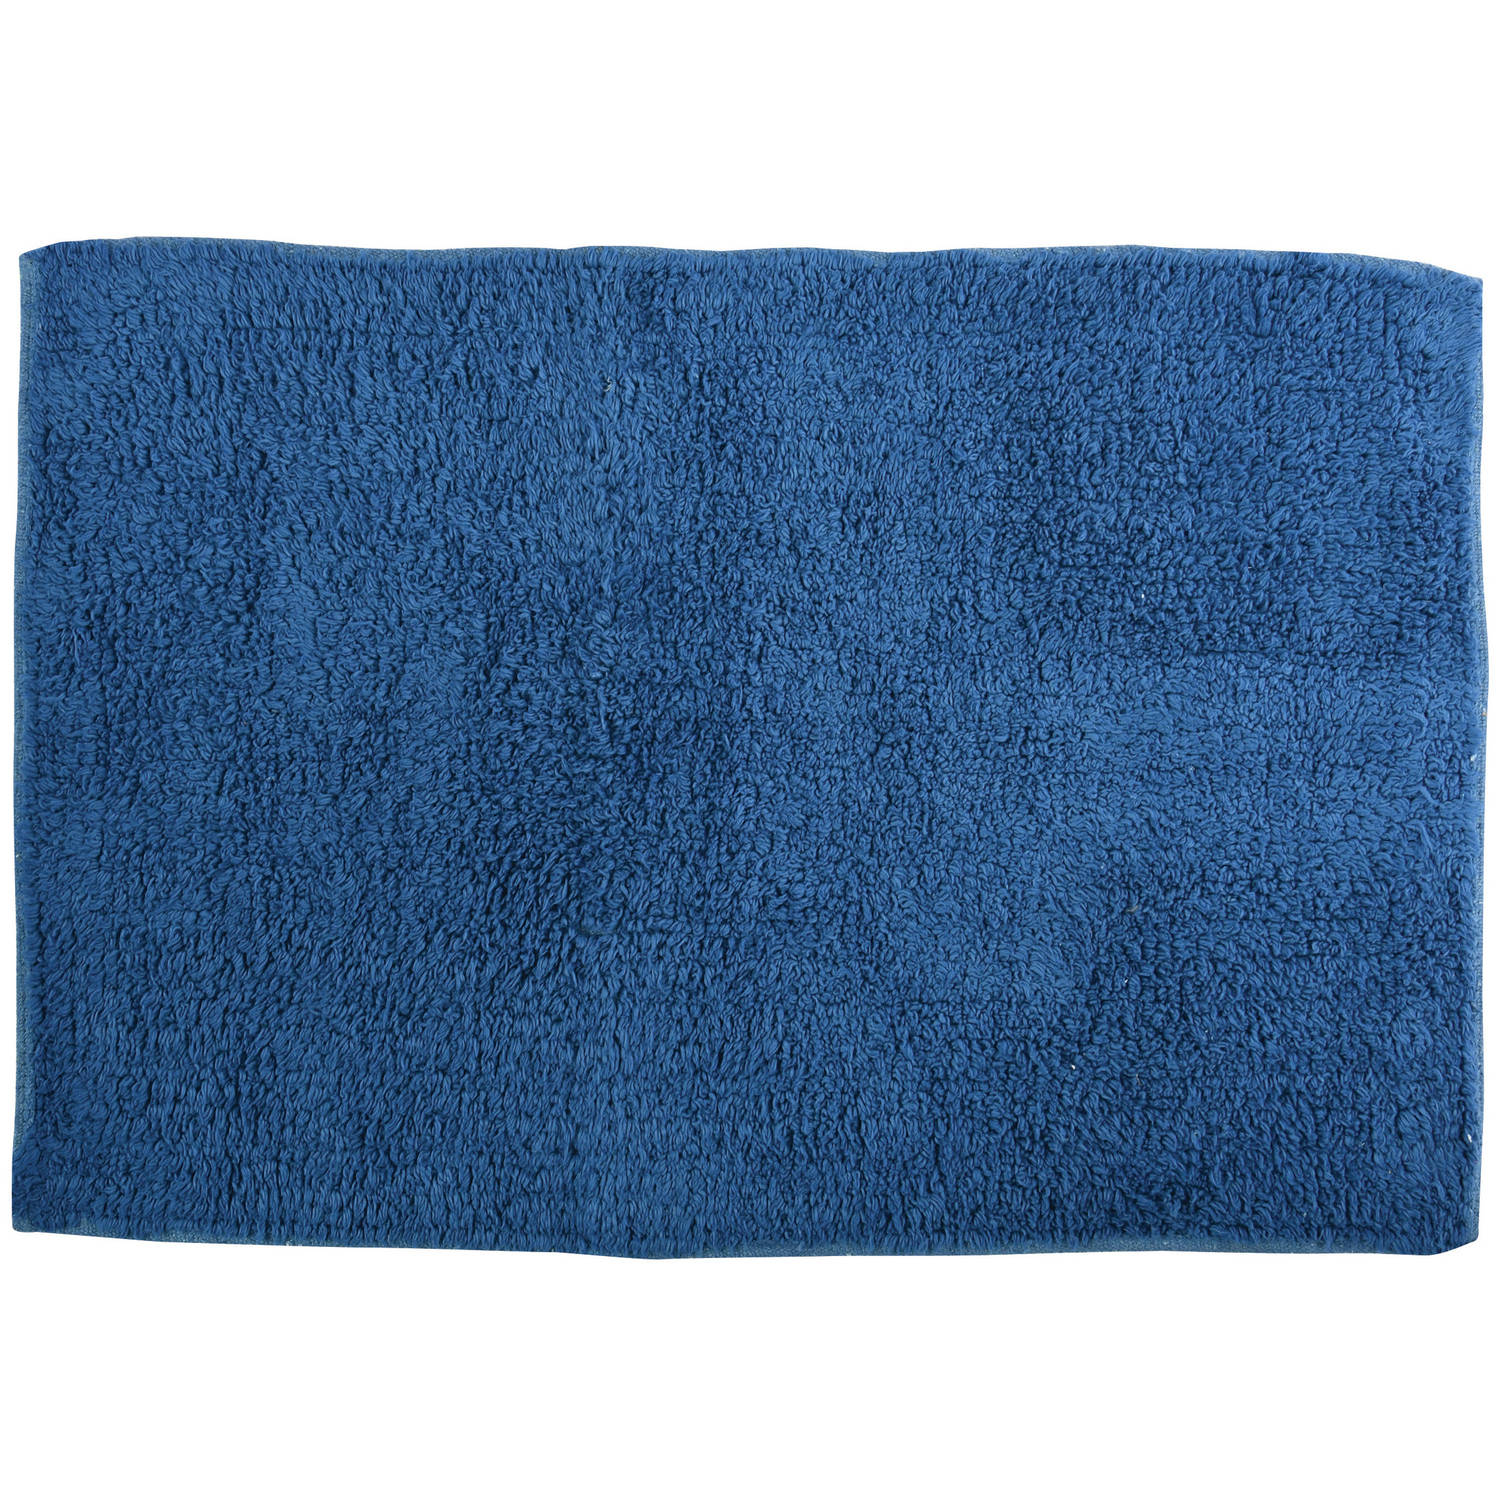 MSV Badkamerkleedje/badmat - voor op de vloer - blauw - 45 x 70 cm - polyester/katoen